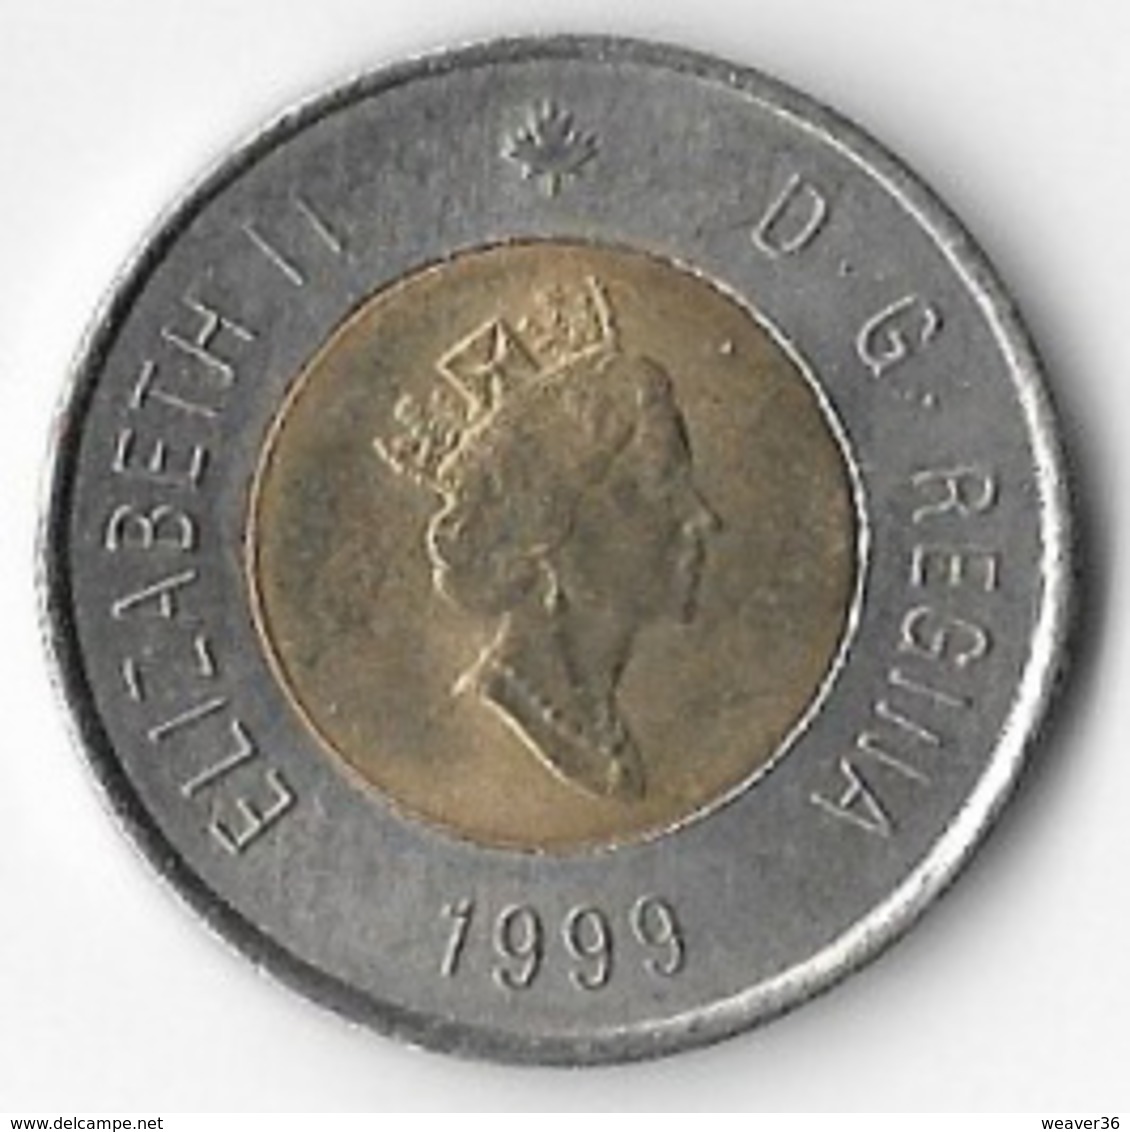 Canada 1999 $2 [C744/2D] - Canada